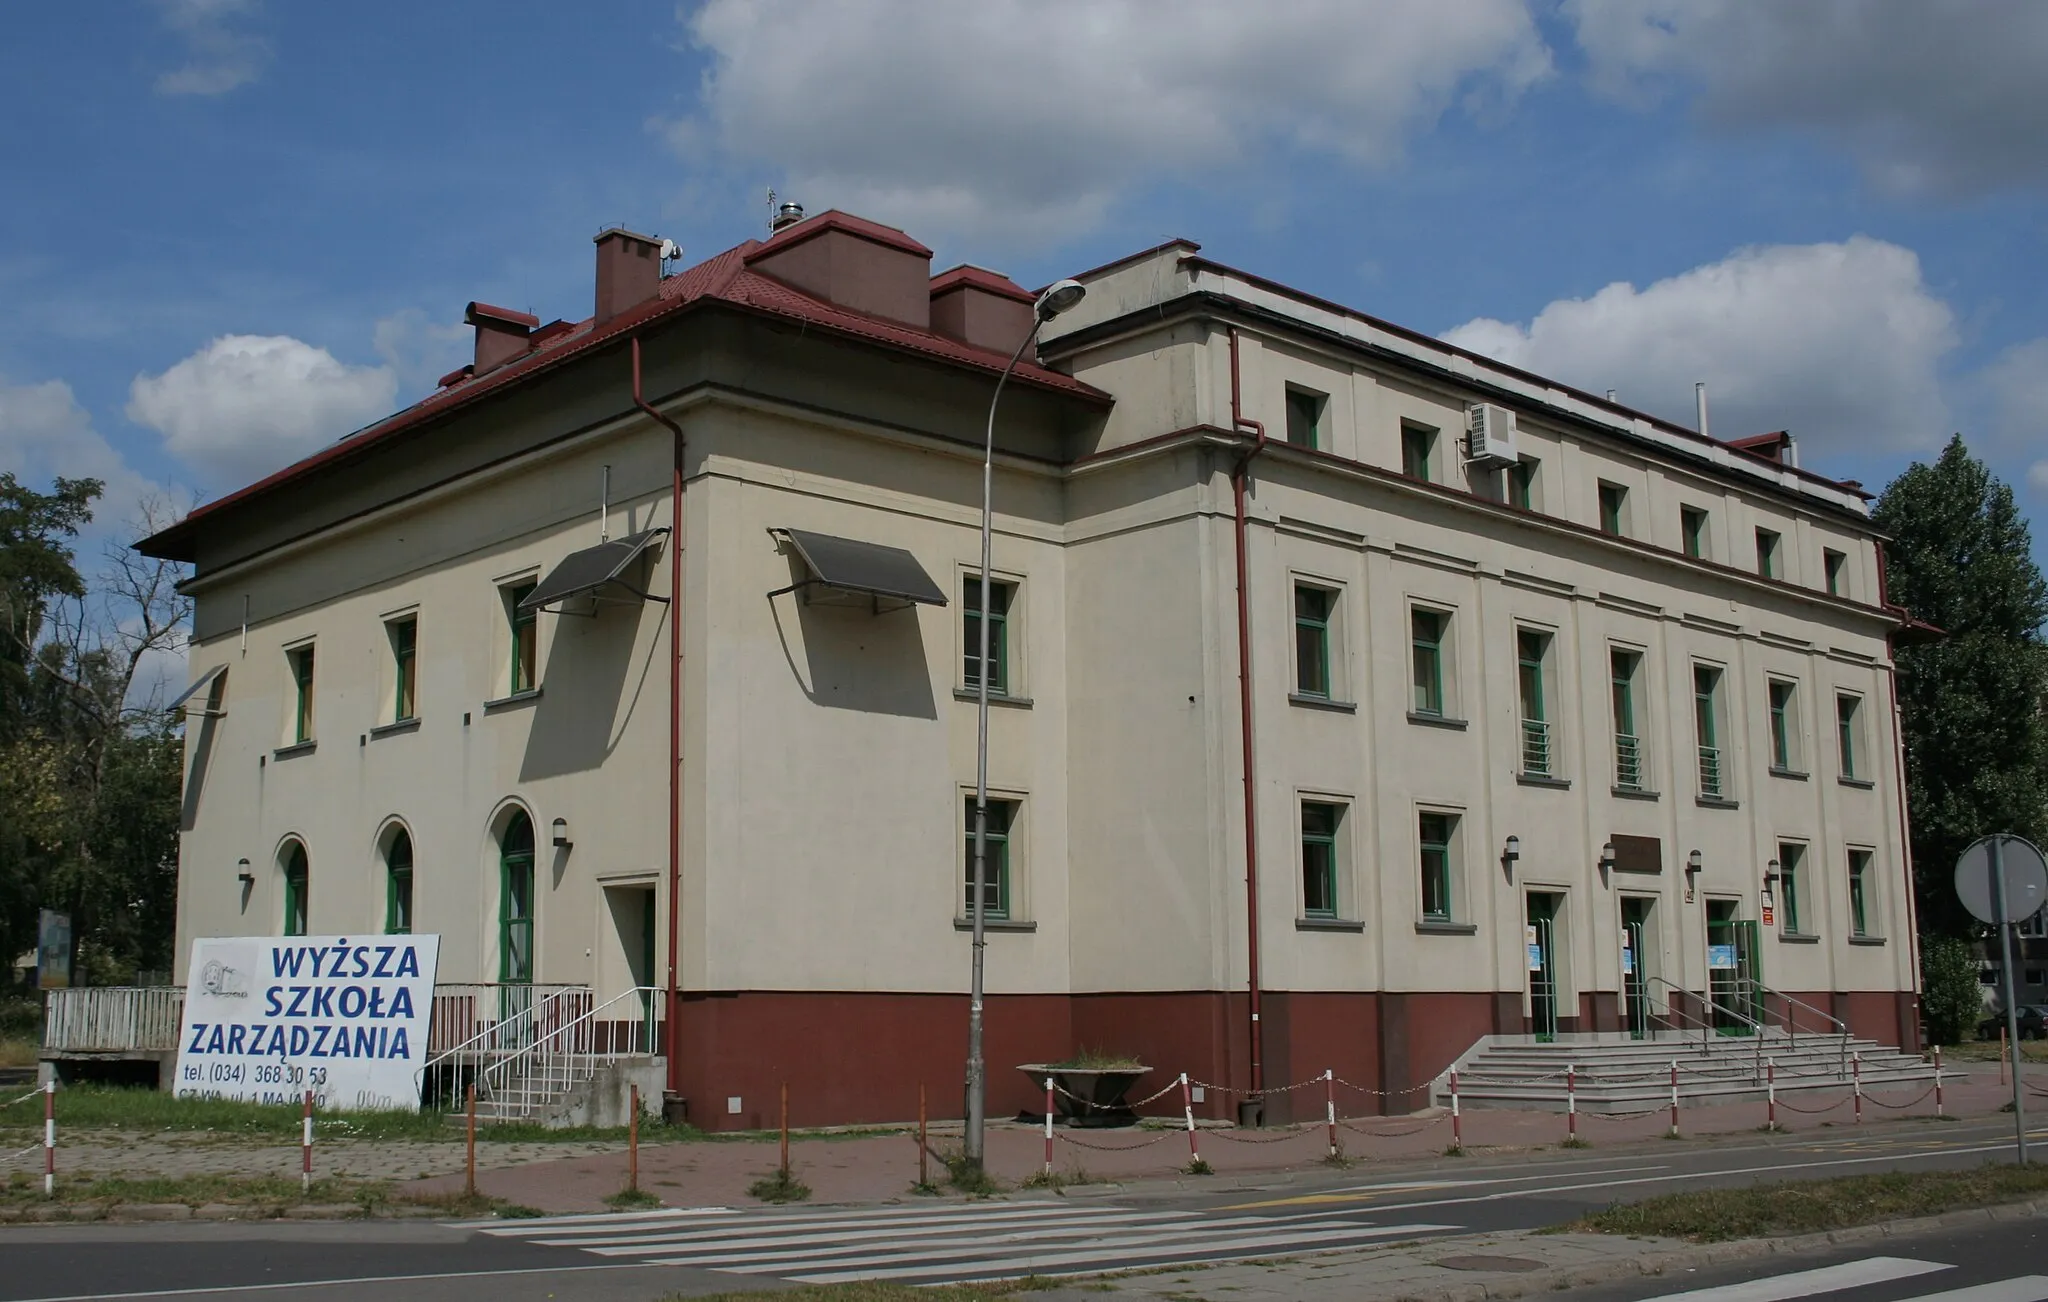 Photo showing: Budynek Wyższej Szkoły Zarządzania w Częstochowie.